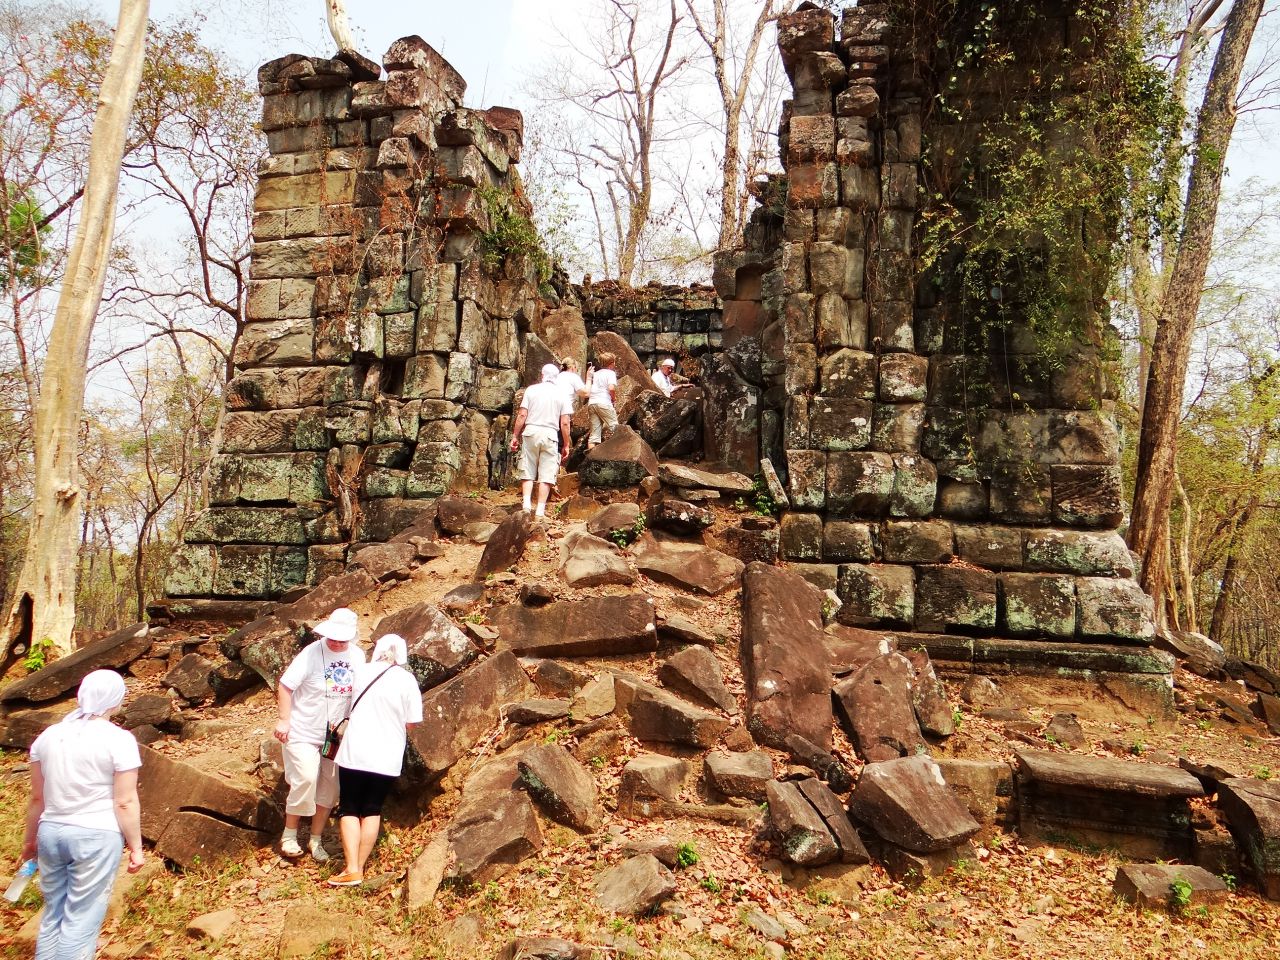 Ко Кер - это древний город-храм на северо-востоке Камбоджи.Для всеобщего посещения Ко Кер открыт только с 2002 года. А ведь в свое время Ко Кер был столицей Камбоджи на протяжении почти двадцати лет. Несмотря на столь непродолжительный период, на территории города было построено около сотни храмов и святилищ. - Камбоджа, Лаос. Февраль 2014. Часть 3.